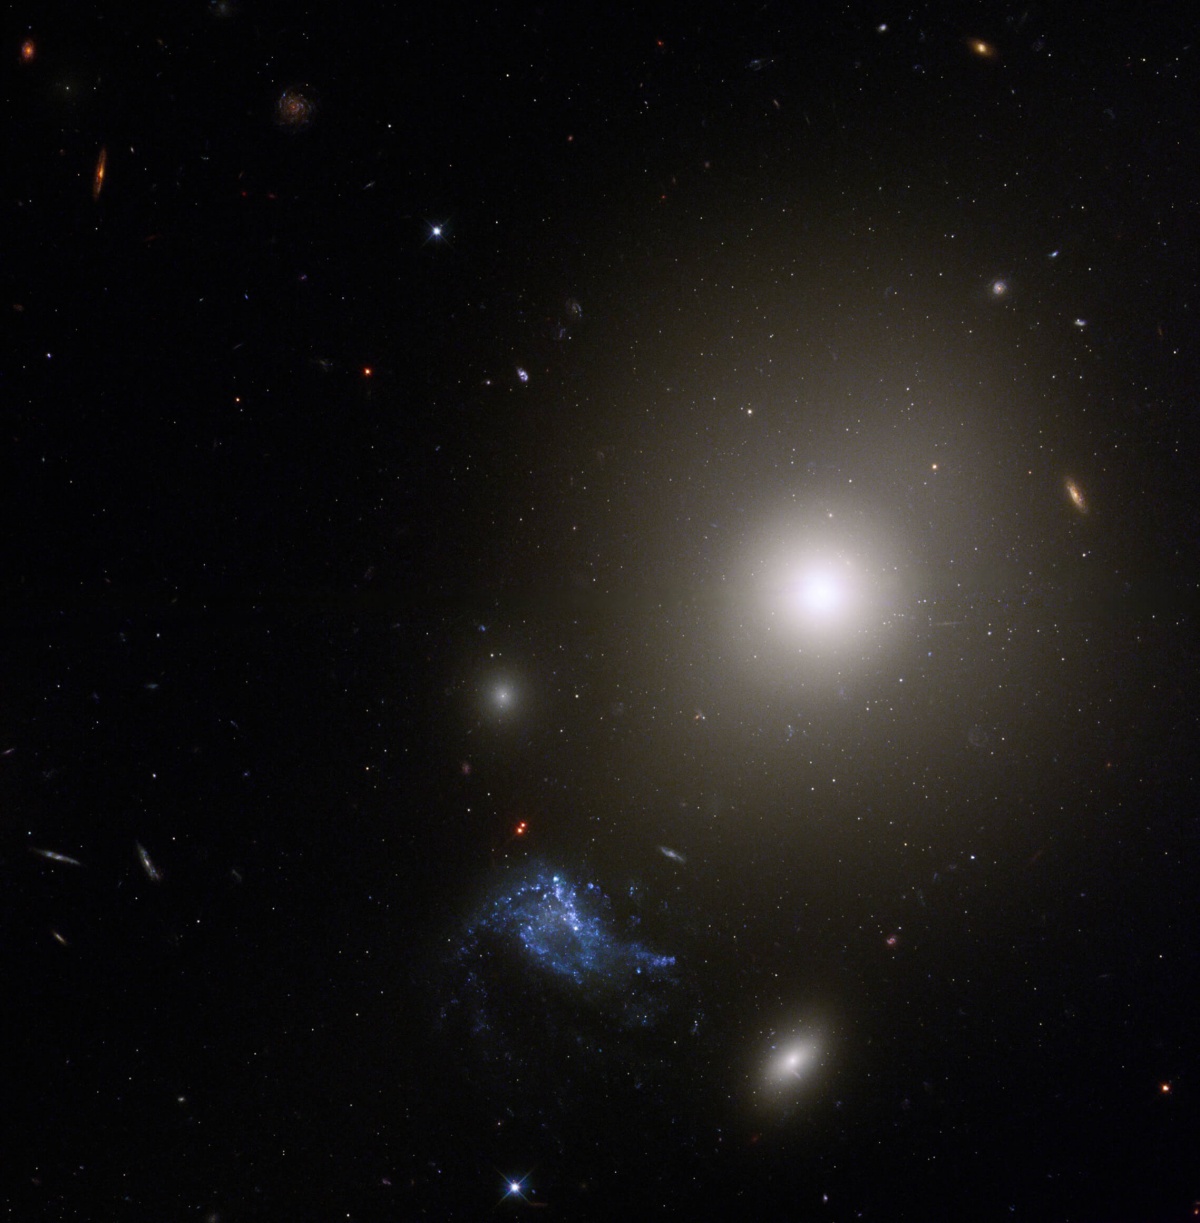 Das Hubble-Weltraumteleskop macht ein Bild einer Zwerggalaxie neben einer sehr hellen elliptischen Galaxie